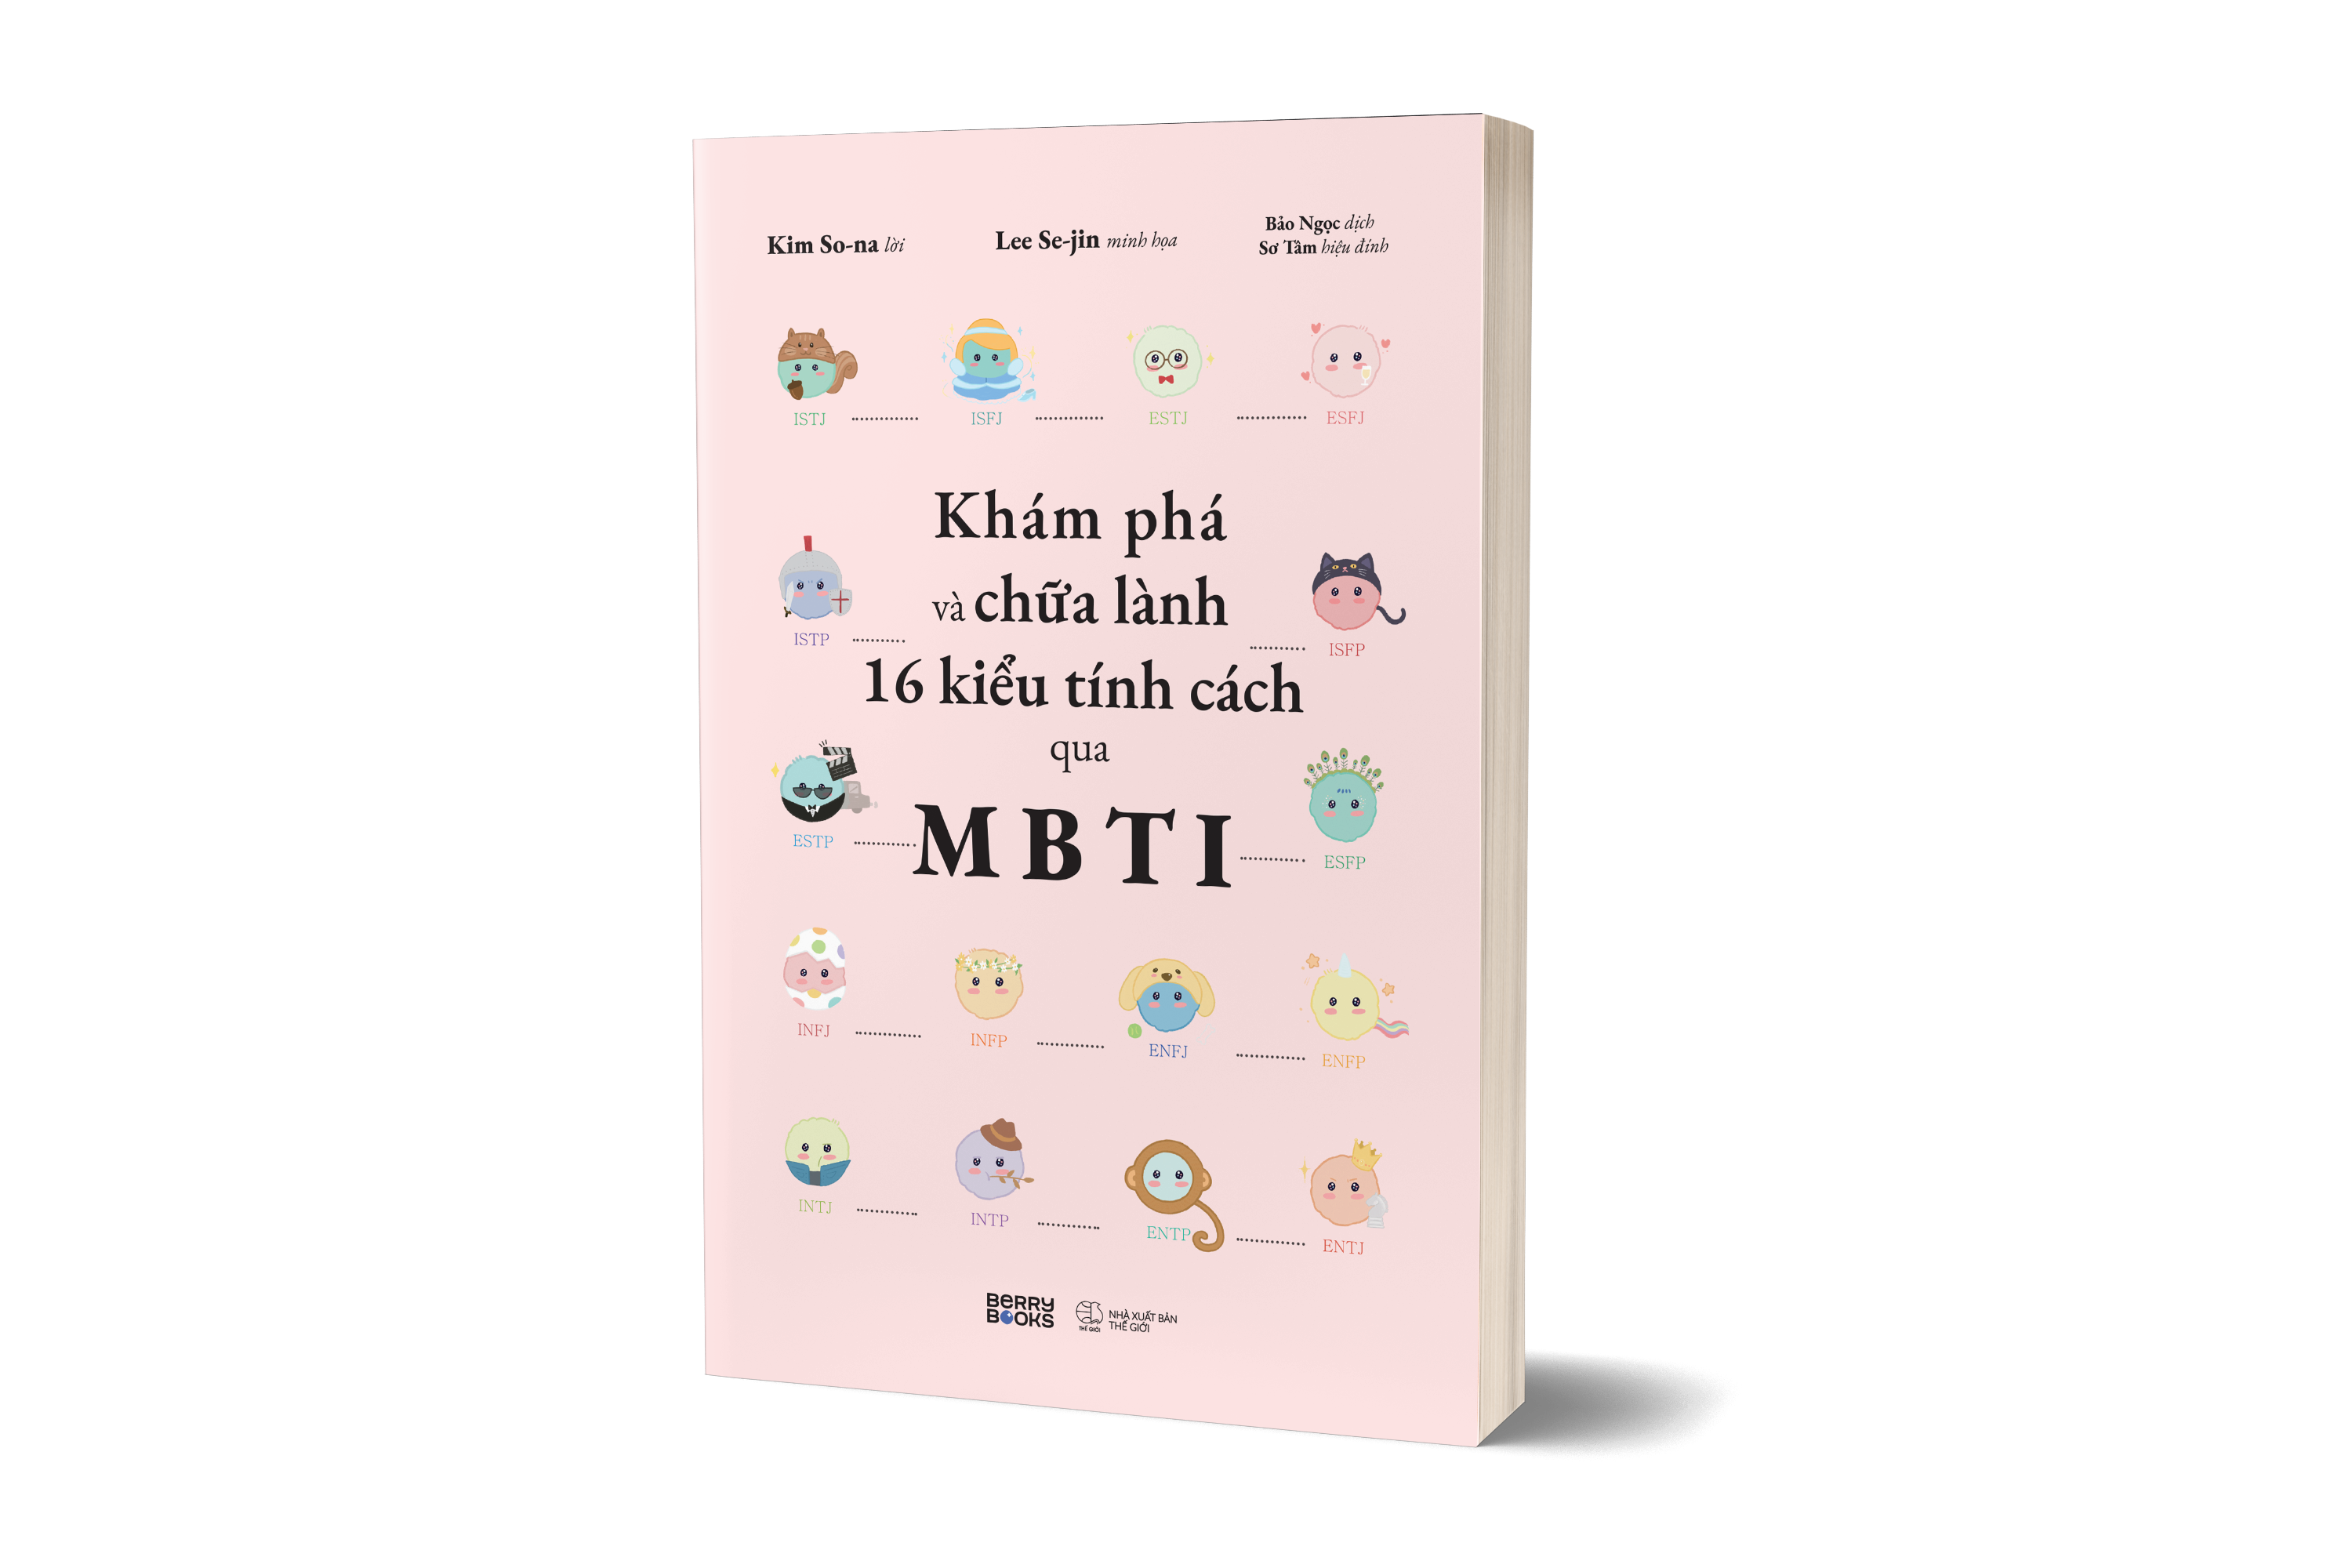 Khám Phá Và Chữa Lành 16 Kiểu Tính Cách Qua MBTI PDF